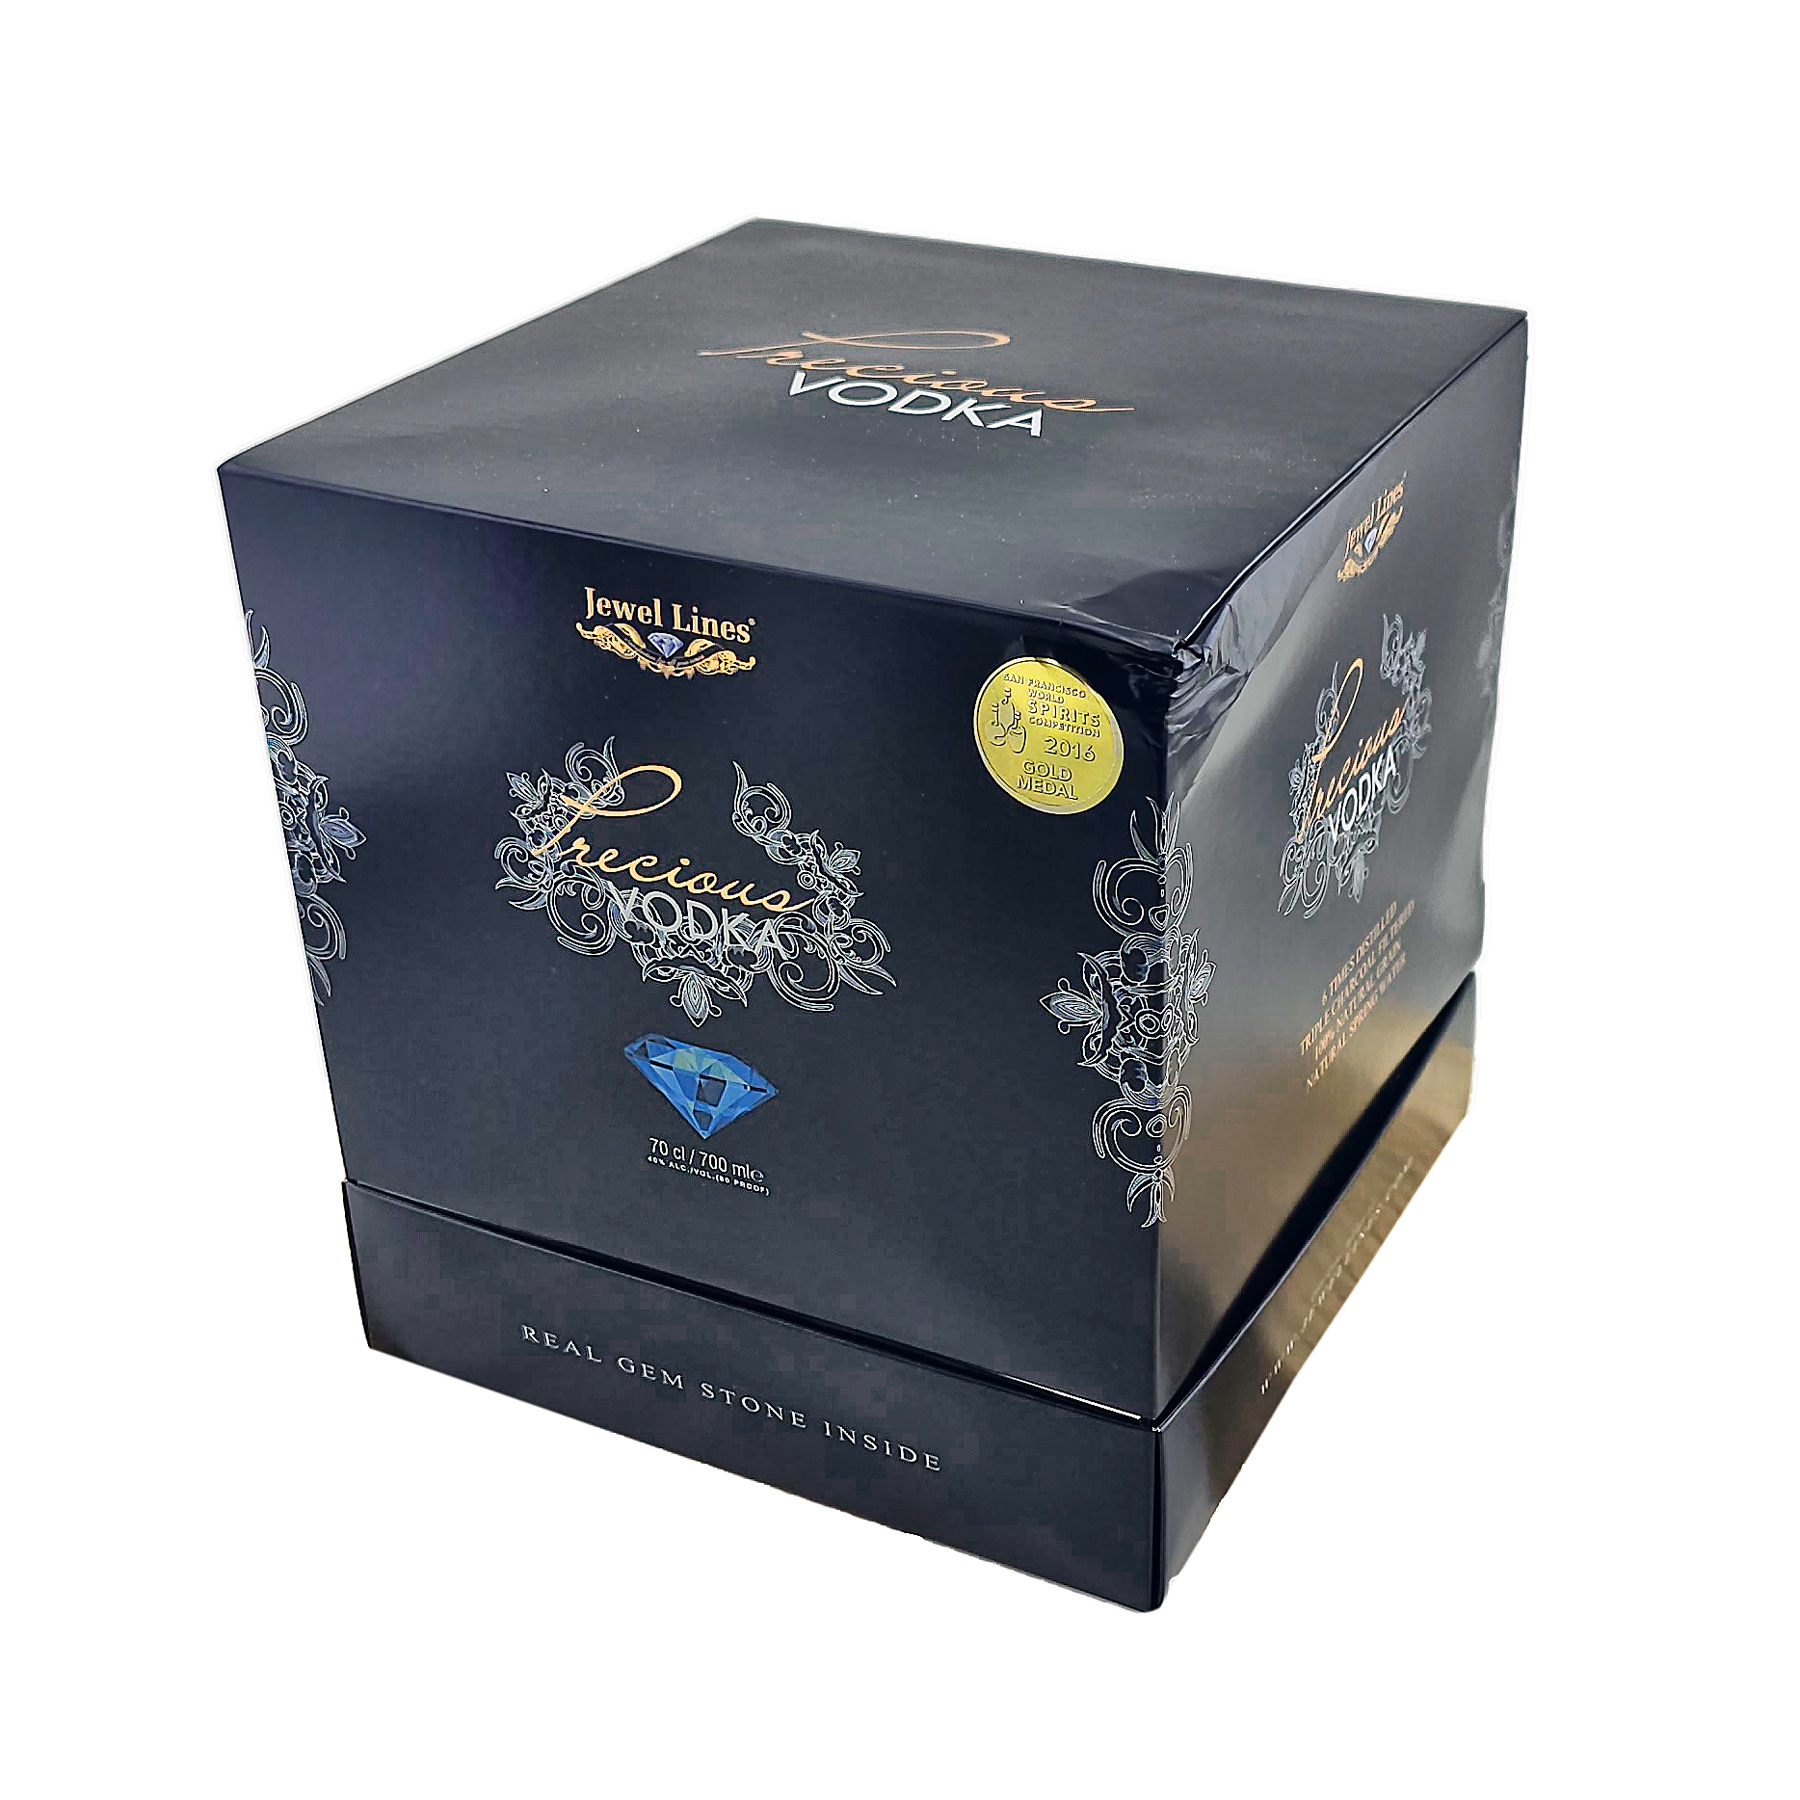 Precious Vodka Jewel Line Luxury Box (leicht eingedrückt), 40% Vol. 0,7 ltr.